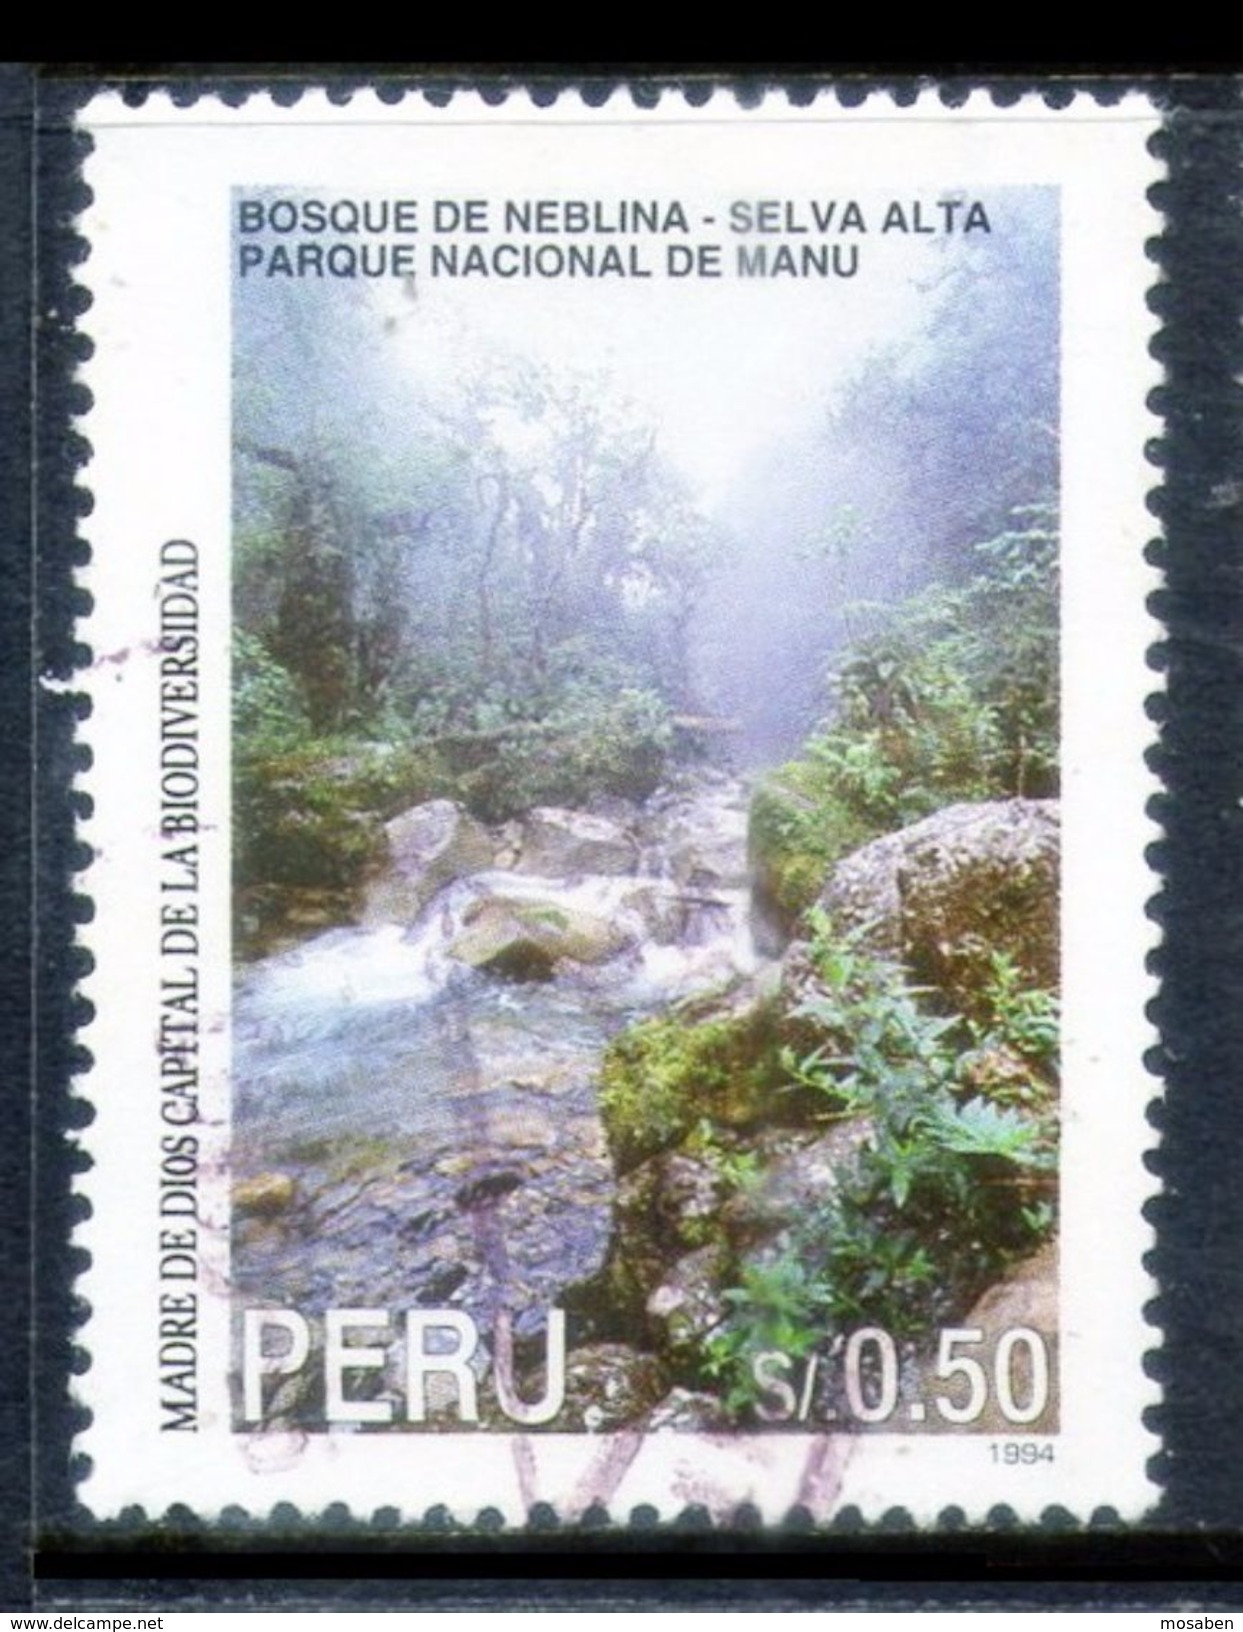 PERÚ	-	Mi. 1564 C	-				N-9789 - Peru